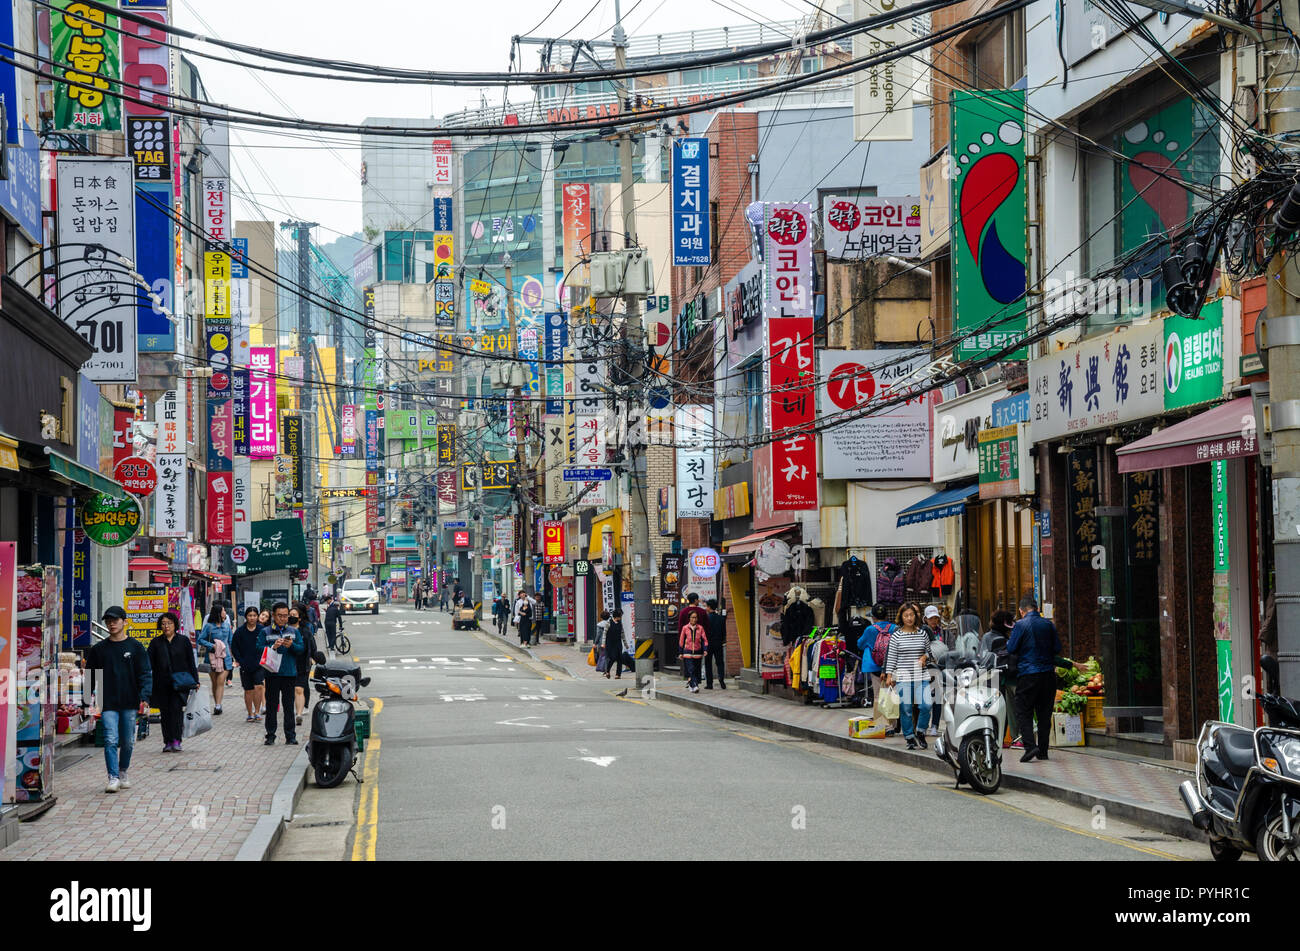 Une rue avec de nombreuses boutiques de Haeundae, Busan, Corée du Sud. Câbles électriques aériens sillonnent la rue. Banque D'Images